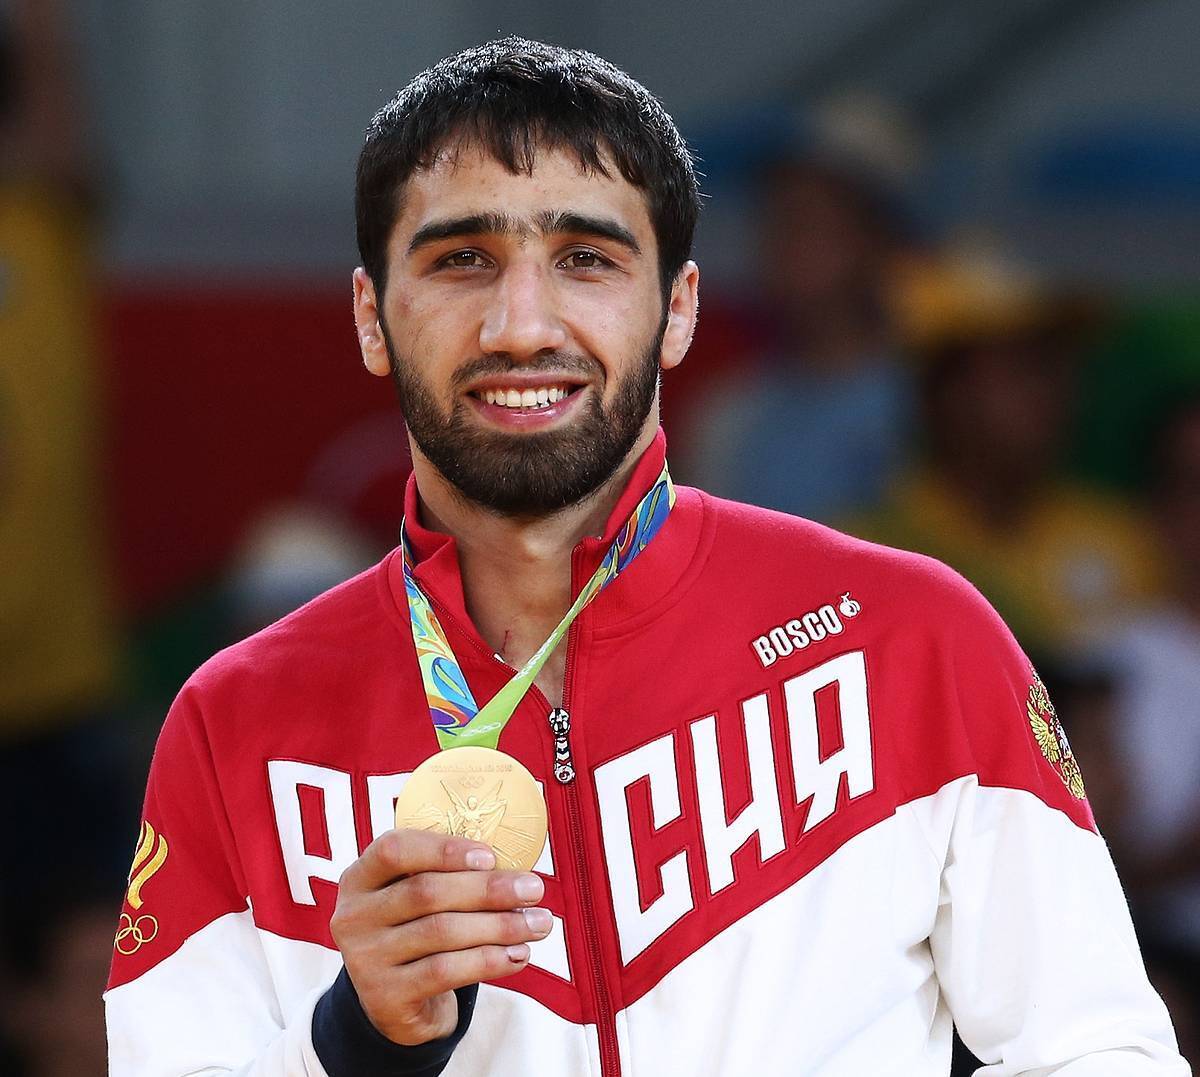 Российского олимпийского чемпиона дисквалифицировали за флаг Палестины